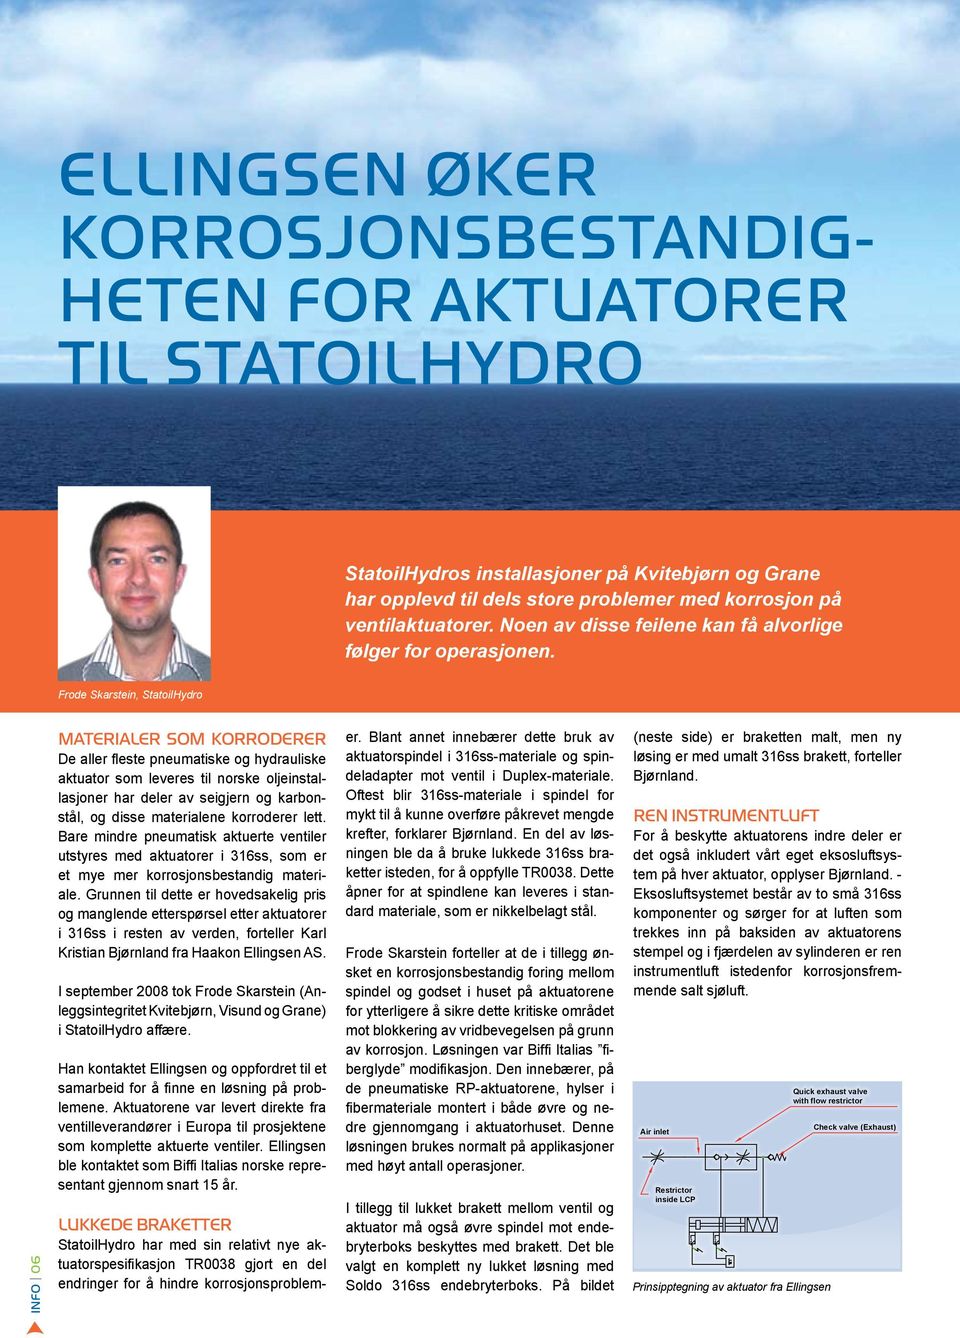 Frode Skarstein, StatoilHydro INFO 06 materialer som korroderer De aller fleste pneumatiske og hydrauliske aktuator som leveres til norske oljeinstallasjoner har deler av seigjern og karbonstål, og